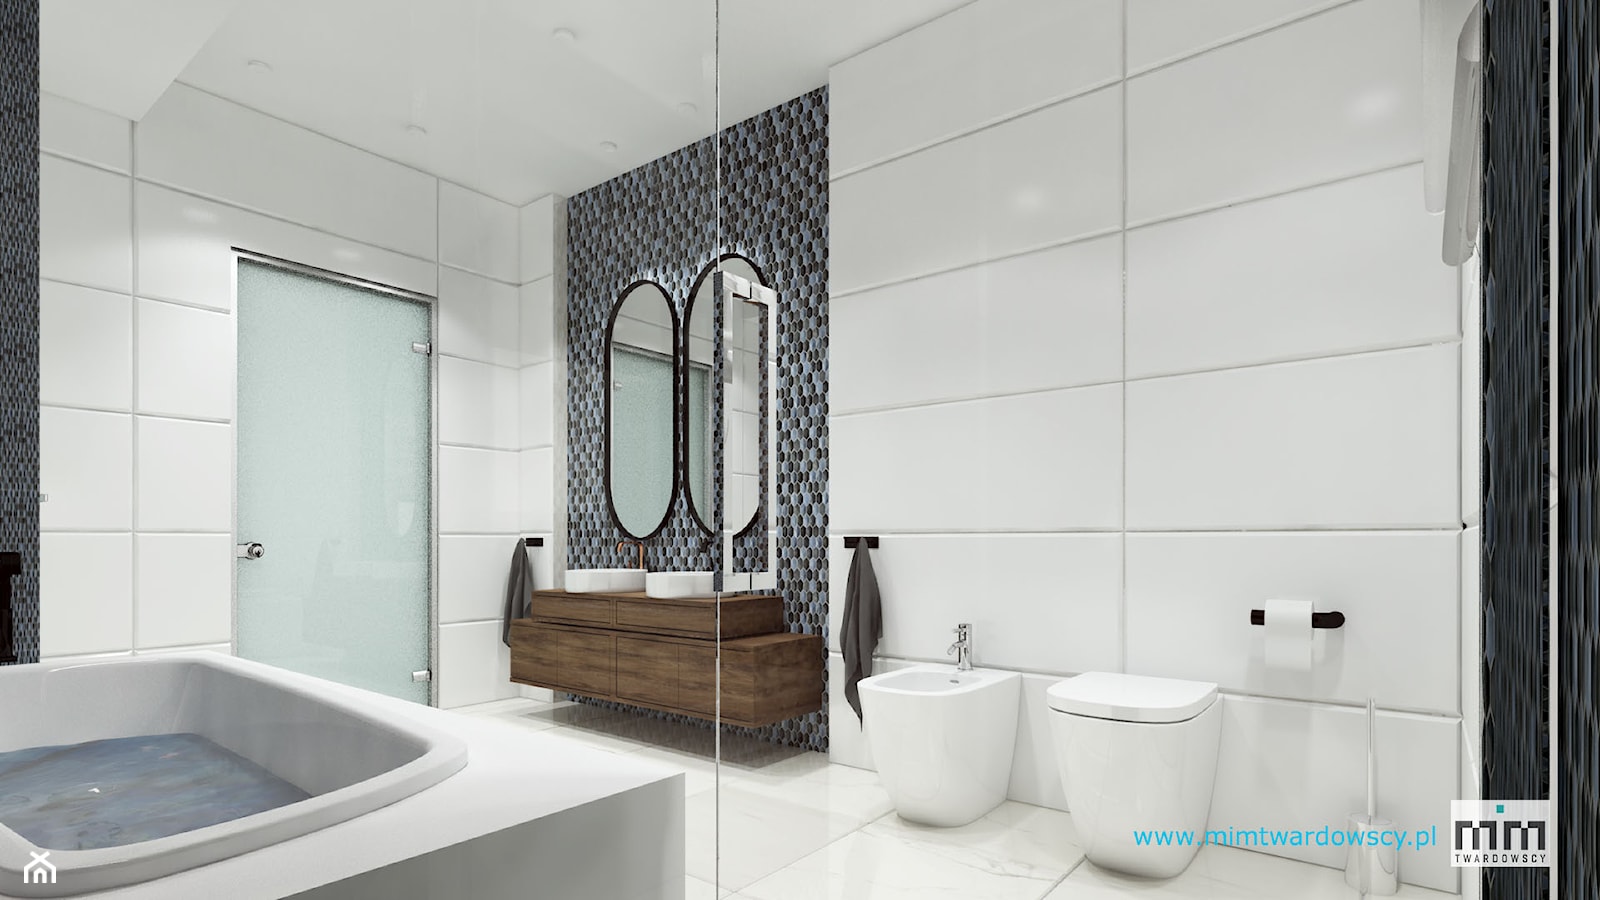 KROP łazienka z piękna mozaiką :) - Średnia z dwoma umywalkami z punktowym oświetleniem łazienka z oknem, styl nowoczesny - zdjęcie od mimtwardowscy - Homebook